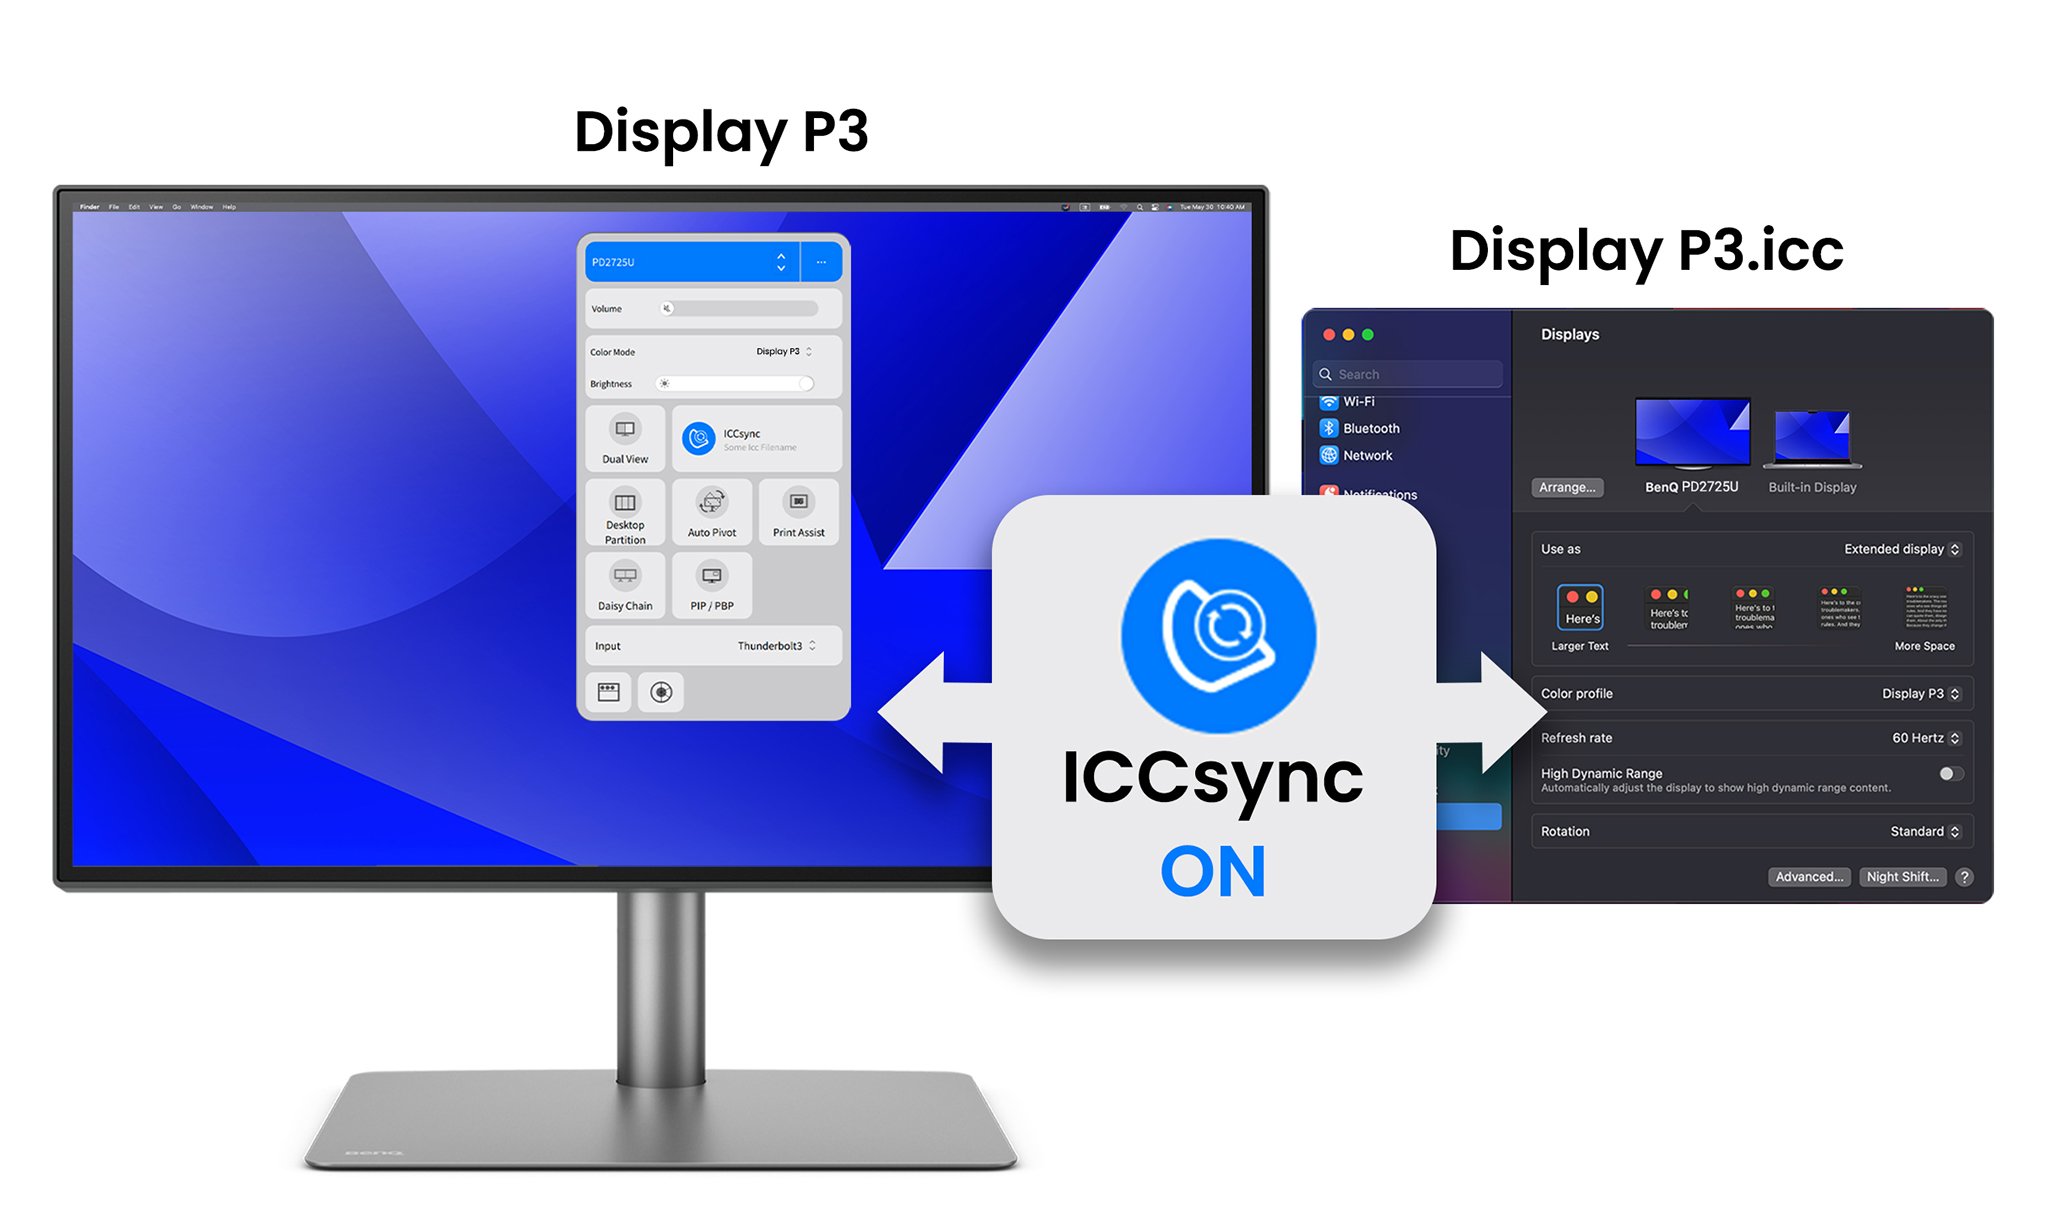 Funkce BenQ ICCsync automaticky porovnává a synchronizuje profily ICC na monitoru při změně režimů barev a rovněž mezi vaším Macem a monitorem BenQ. To vše probíhá okamžitě.